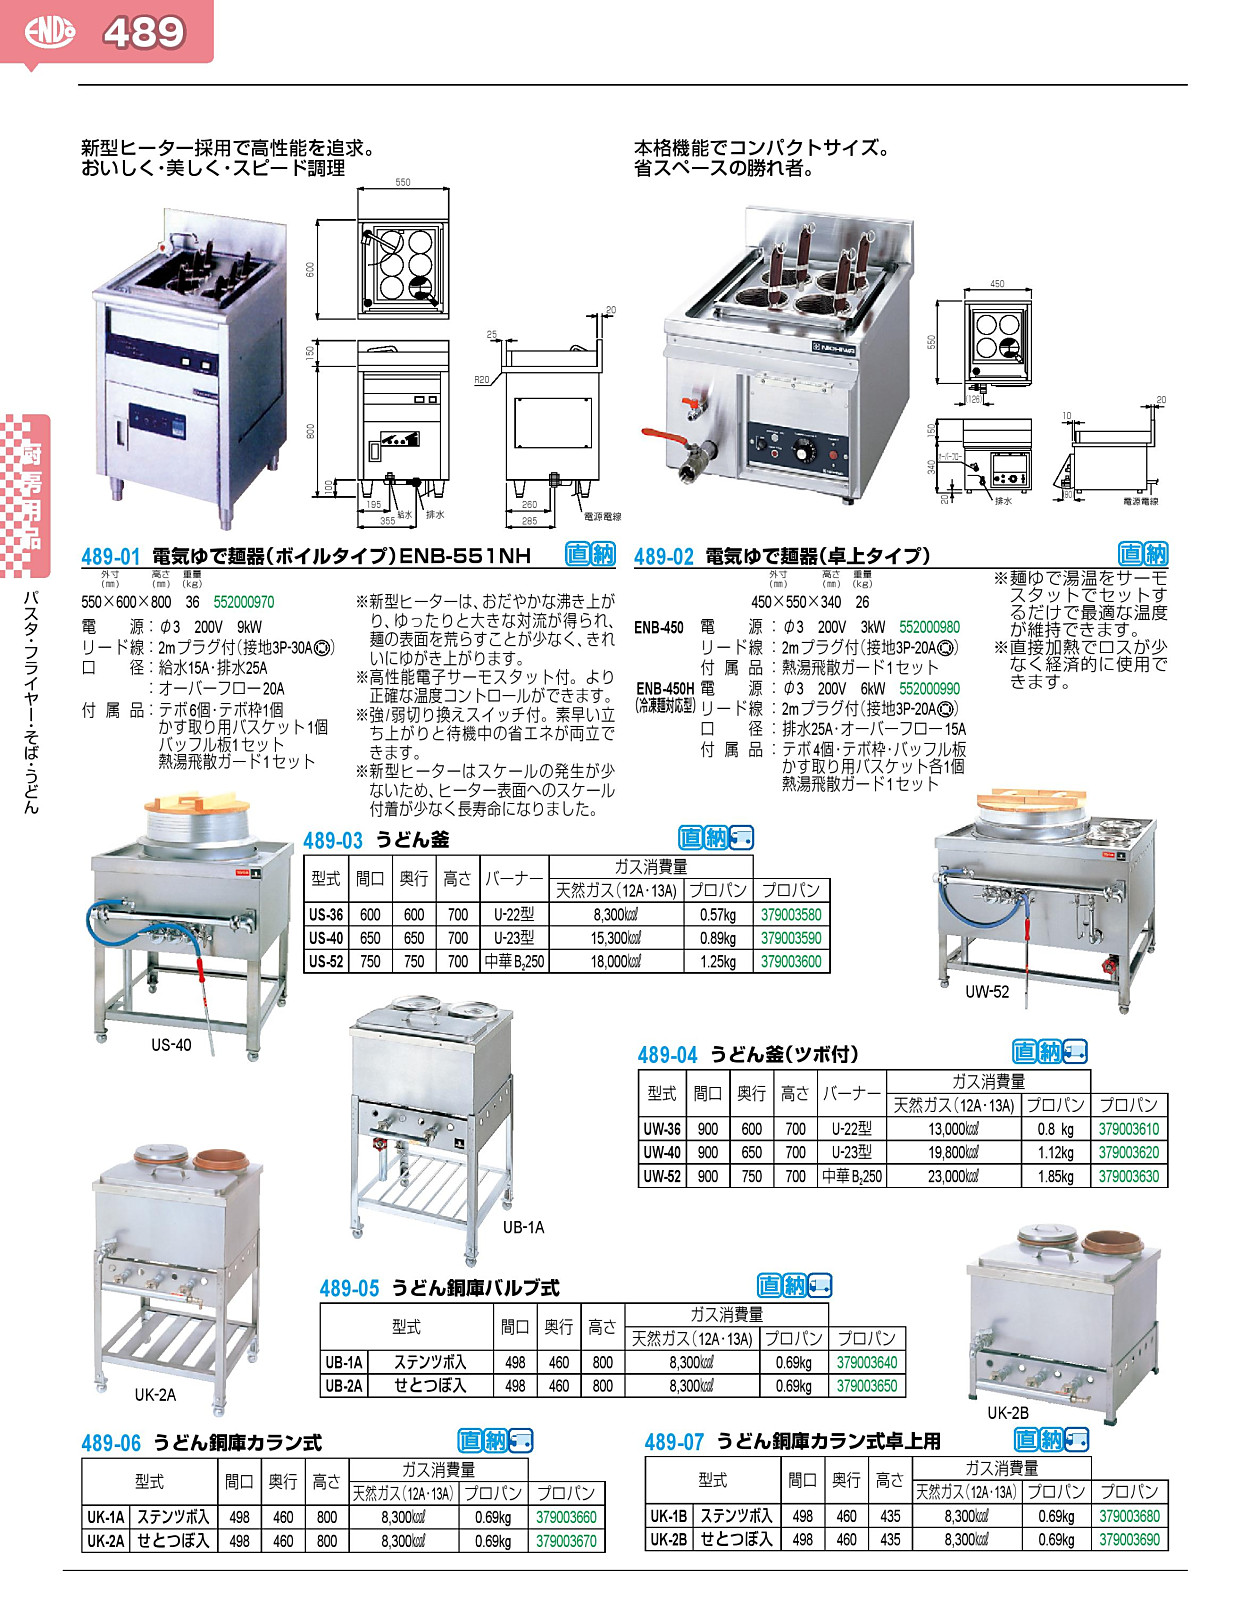 489-01 電気ゆで麺器（ボイルタイプ）ENB-551NH 552000970 業務用調理器具、食器洗浄機、冷凍庫など厨房機器∥おいしい厨房